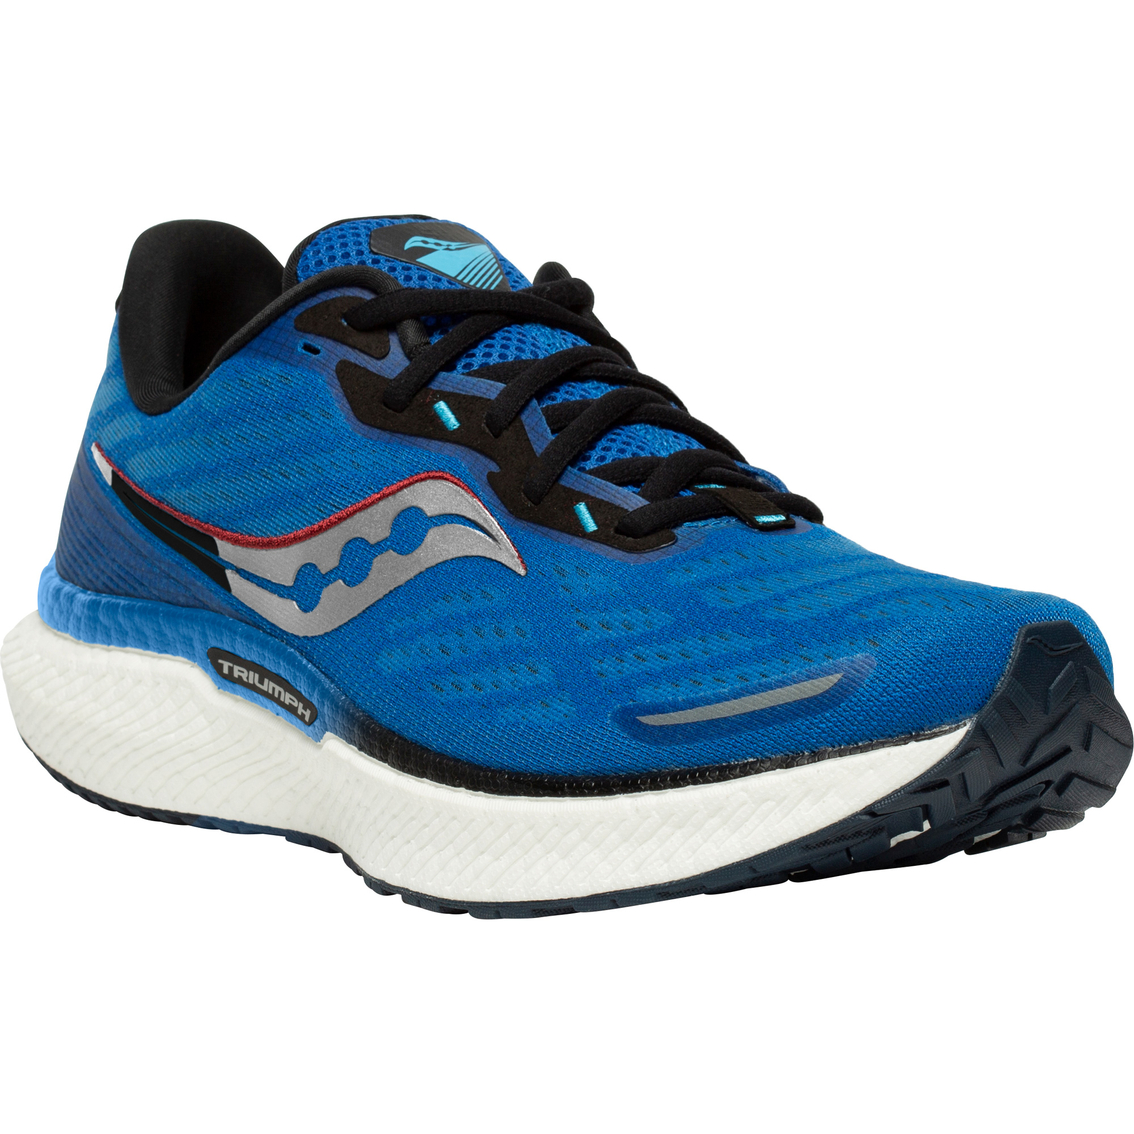 Saucony Men's Triumph 19 Running Shoes | Men's Athletic Shoes | Shoes ...